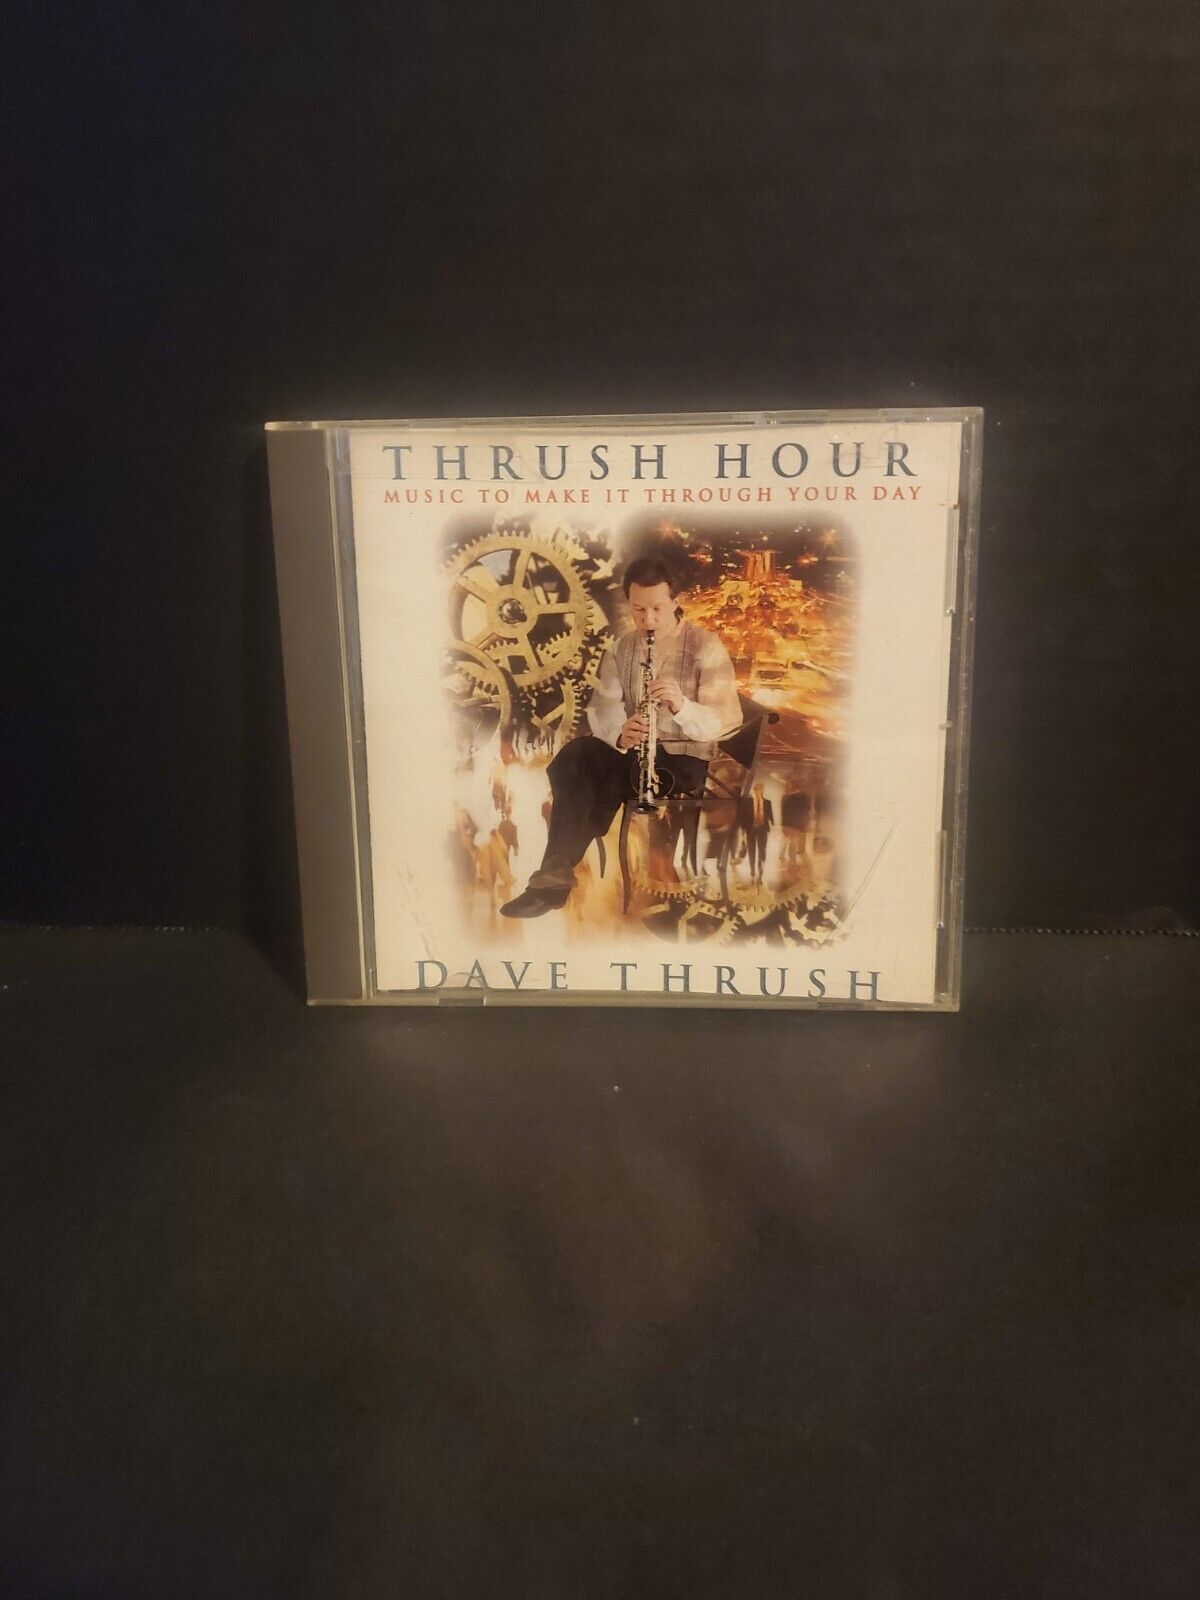 Thrush Hour by David Thrush Music To Make It Through Your Day CD 1998 